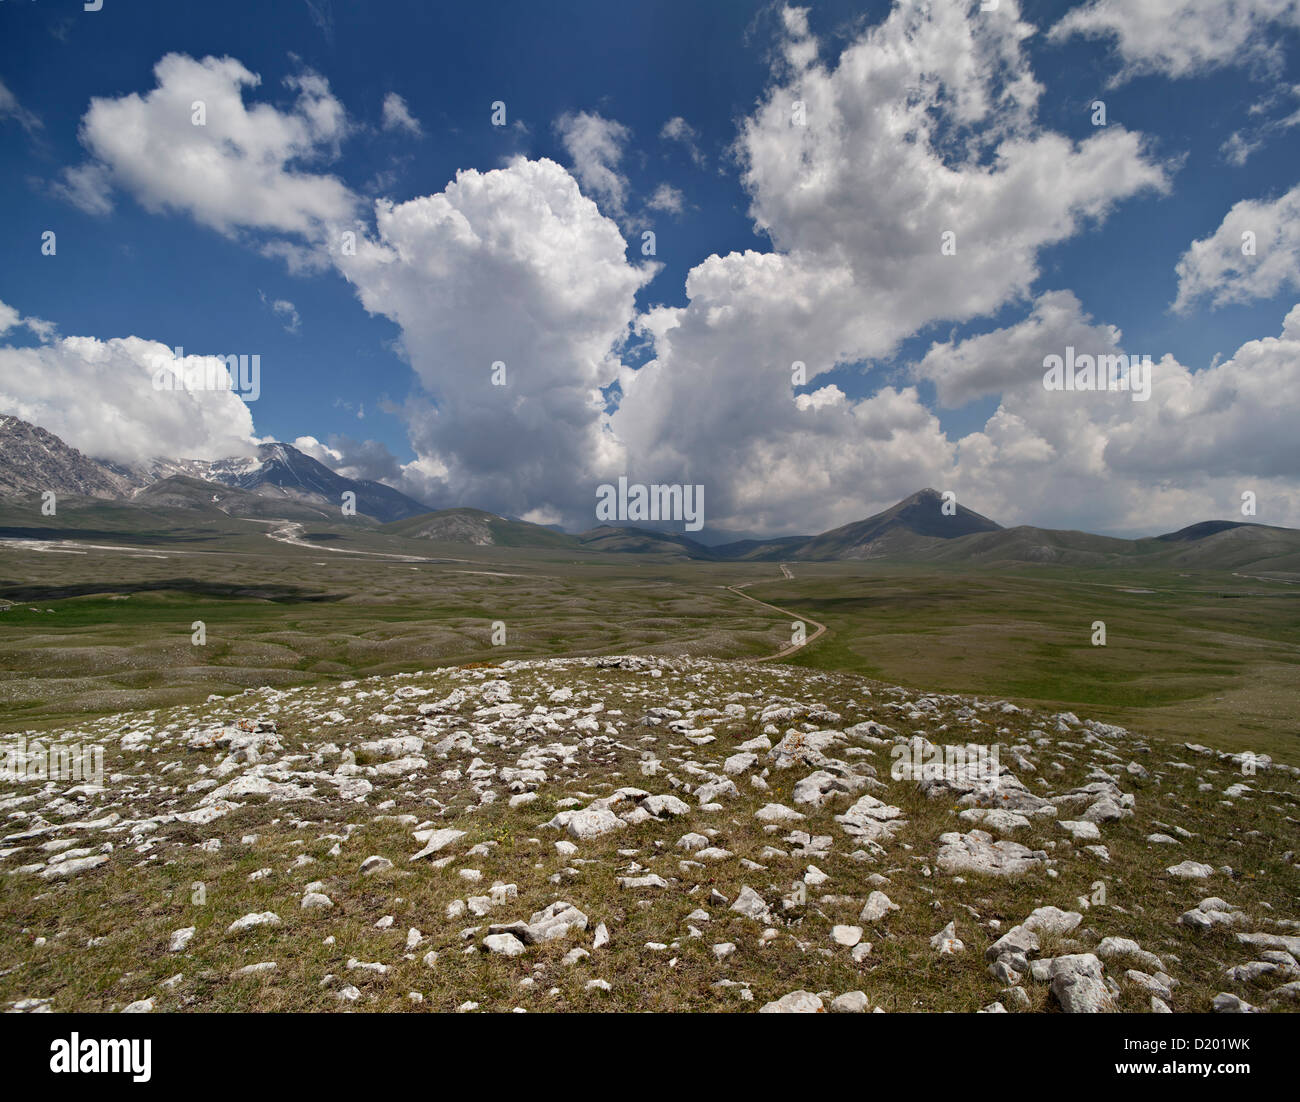 Campo Imperatore, Gran Sasso e Monti della Laga National Park, High Plateau, Abruzzo, Province L’Aquila, Italy Stock Photo